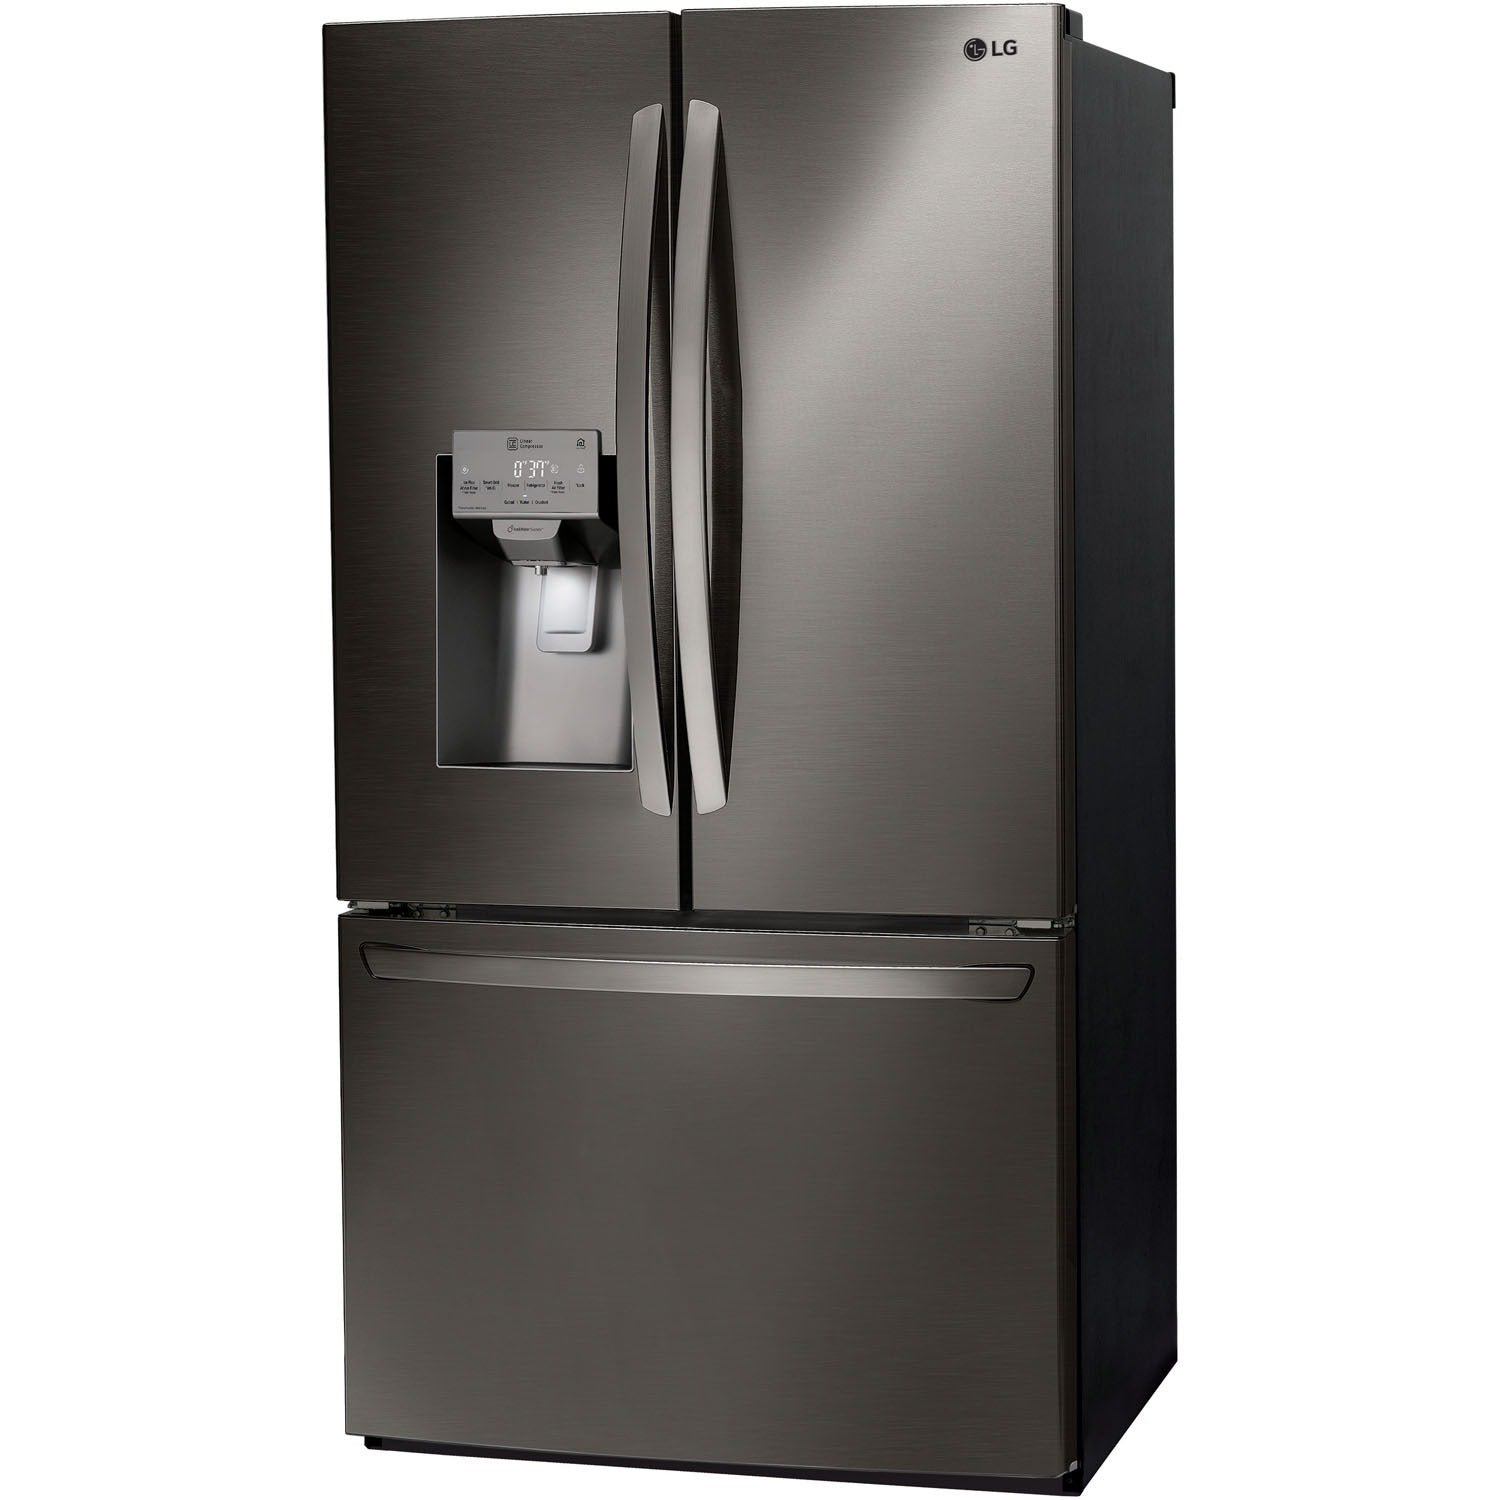 LG 36 Inch 3-Door French Door Refrigerator in Black Stainless Steel 28 Cu. Ft. (LFXS26973D)